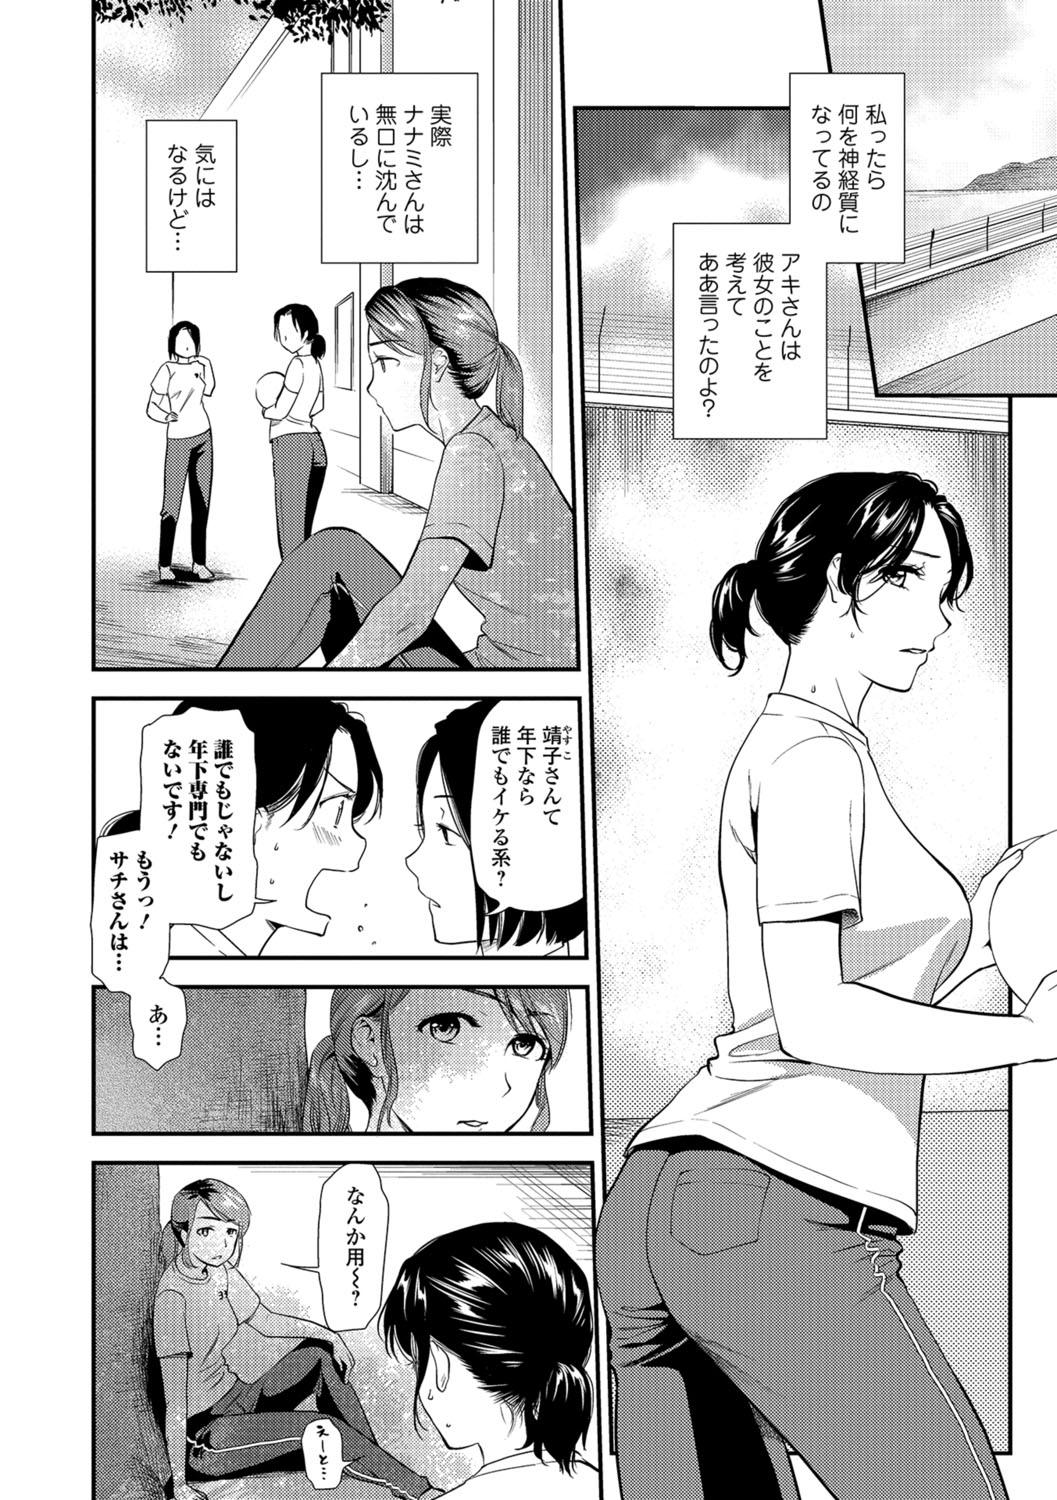 Sextape Web Comic Toutetsu Vol.30 Creamy - Page 11